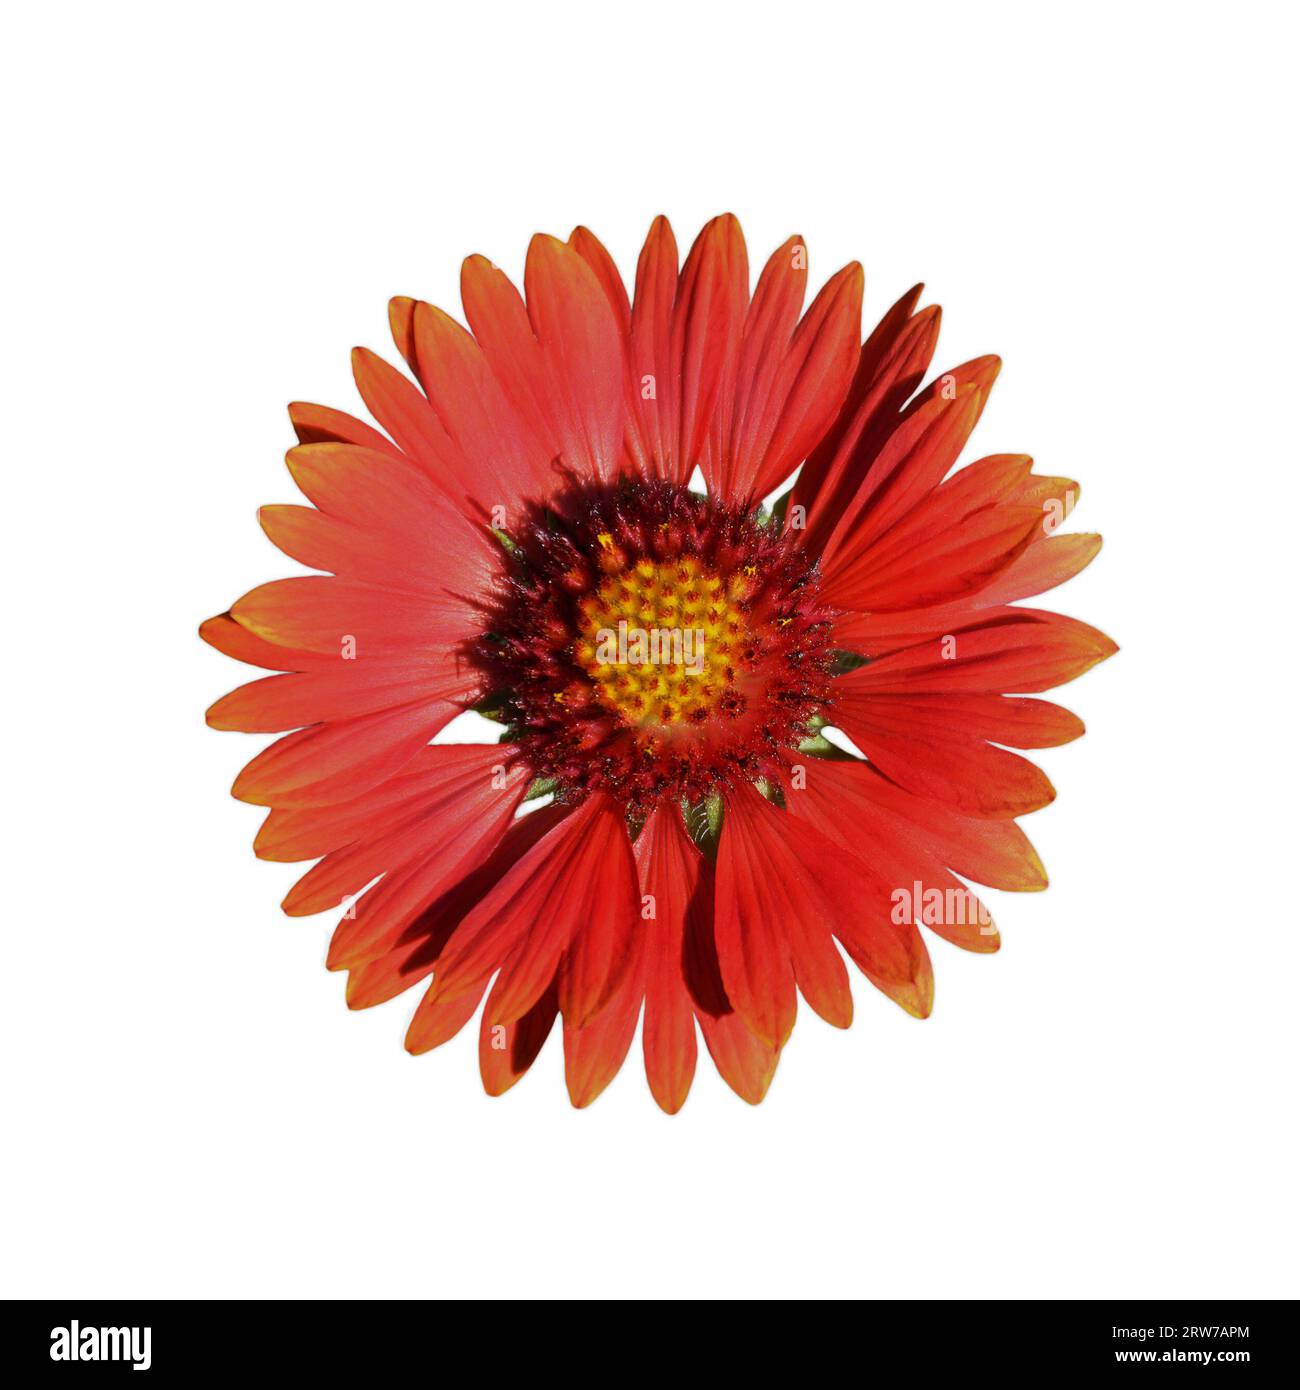 Fleur de couverture isolée sur fond blanc. Vue de dessus de la fleur de bordeaux Gaillardia. Image macro. Banque D'Images